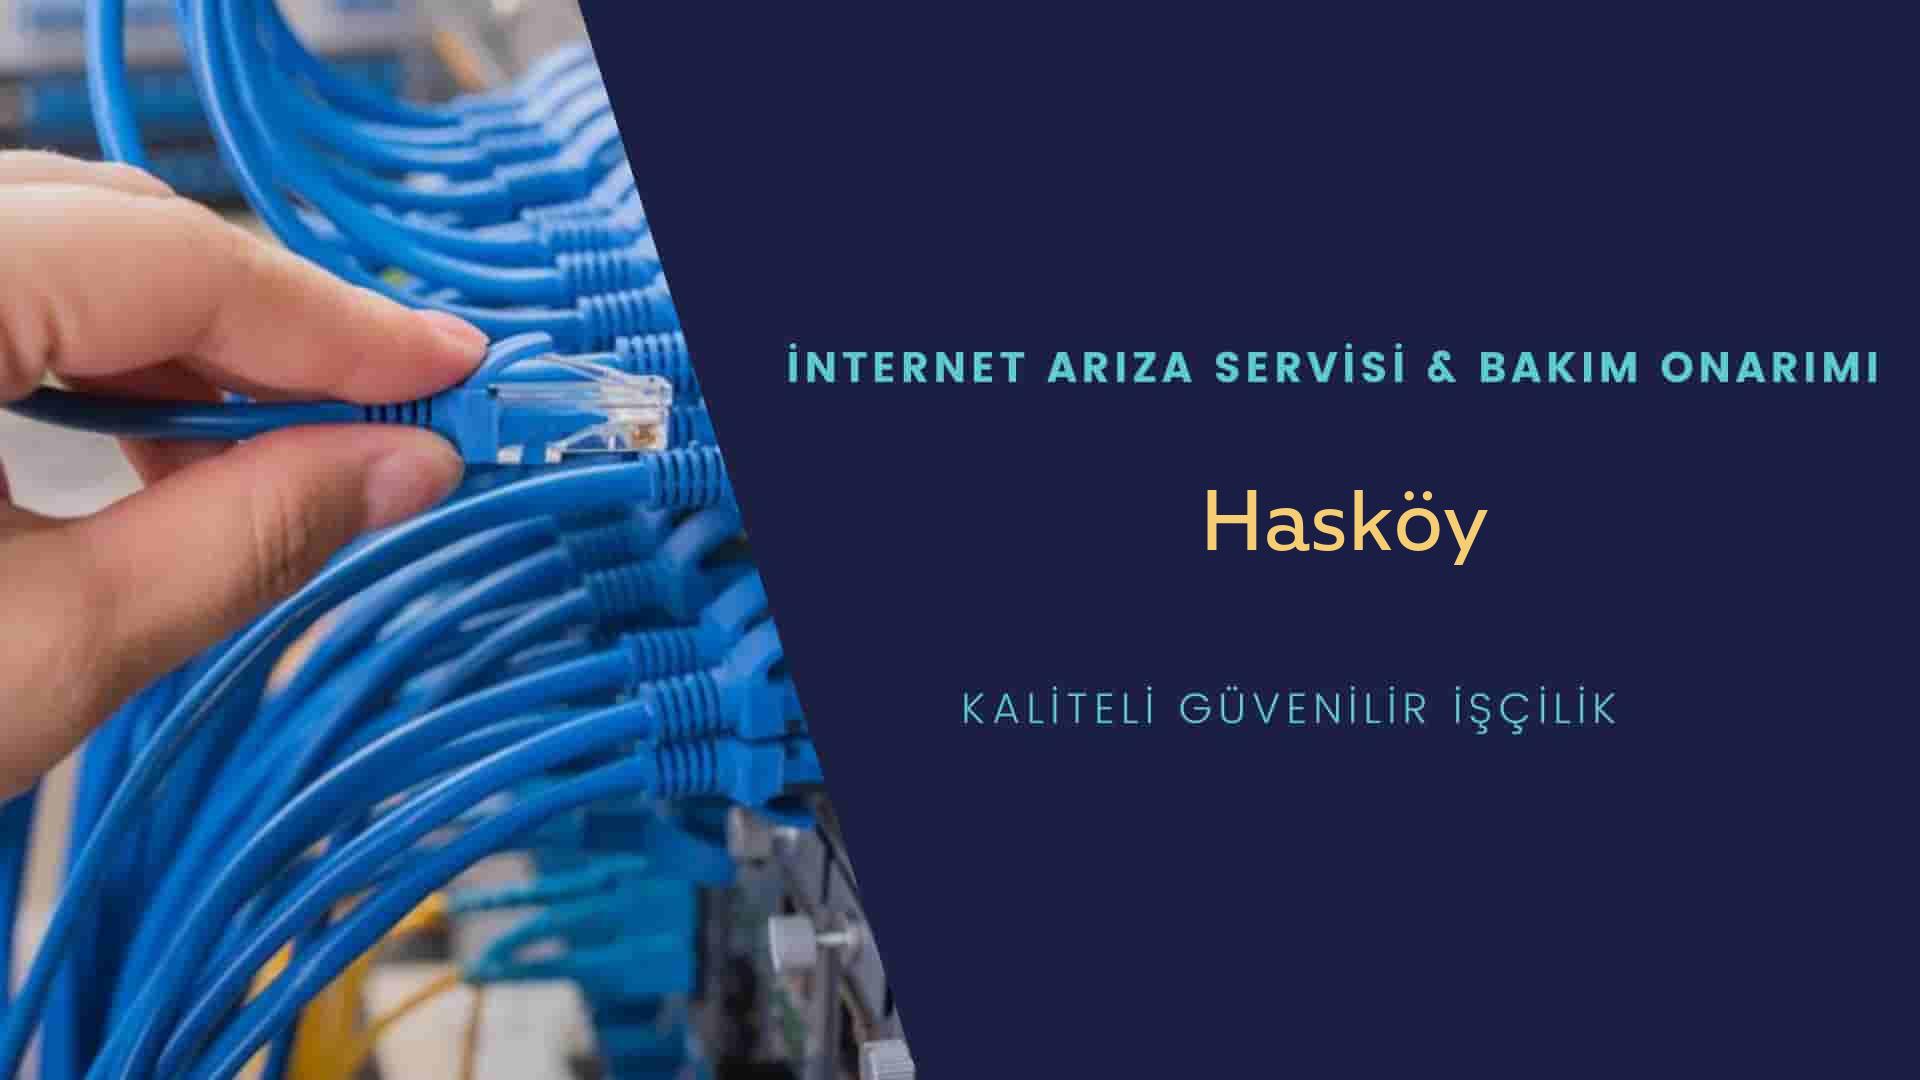 Hasköy Mahallesi internet kablosu çekimi yapan yerler veya elektrikçiler mi? arıyorsunuz doğru yerdesiniz o zaman sizlere 7/24 yardımcı olacak profesyonel ustalarımız bir telefon kadar yakındır size.